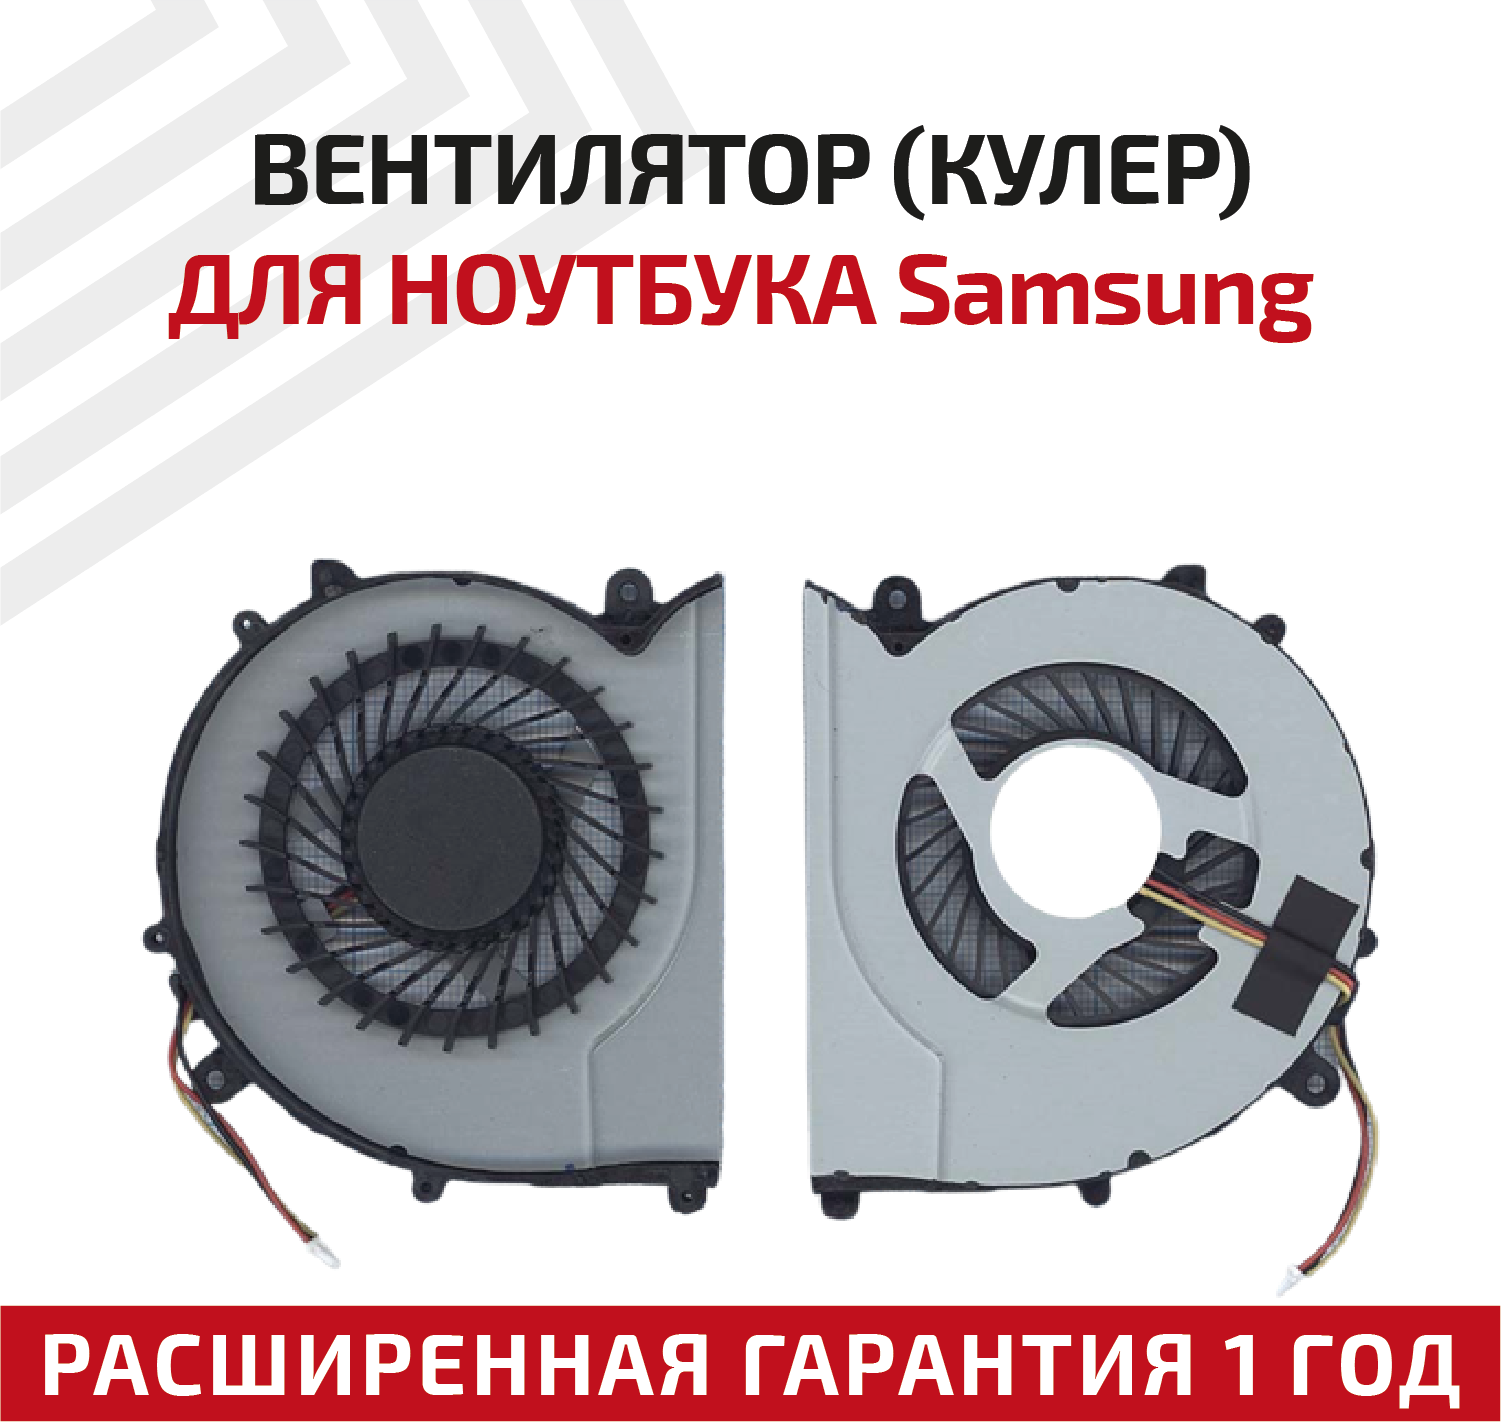 Вентилятор (кулер) для ноутбука Samsung 370R4E, 370R5E, 450R4V, 450R5V, 470R5E, 510R5E, ver.2